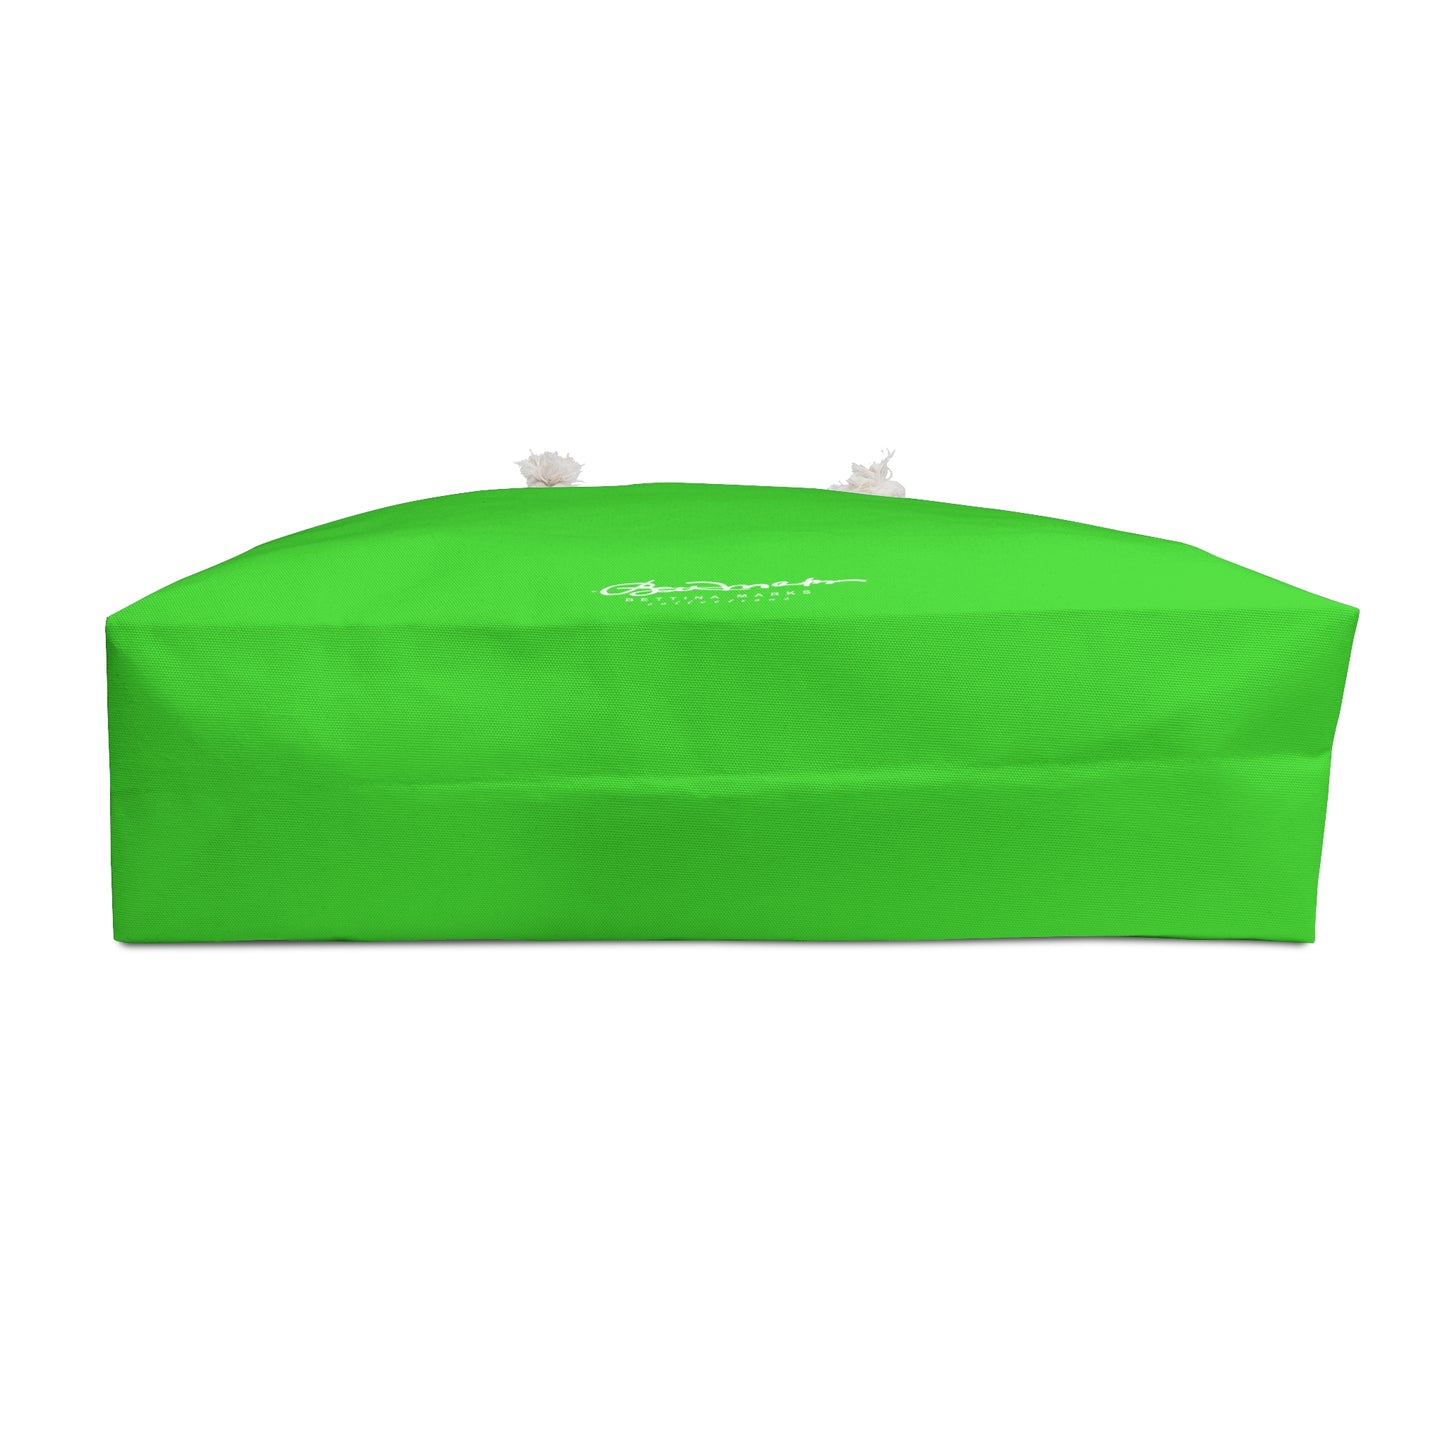 Bright Green Weekender Bag